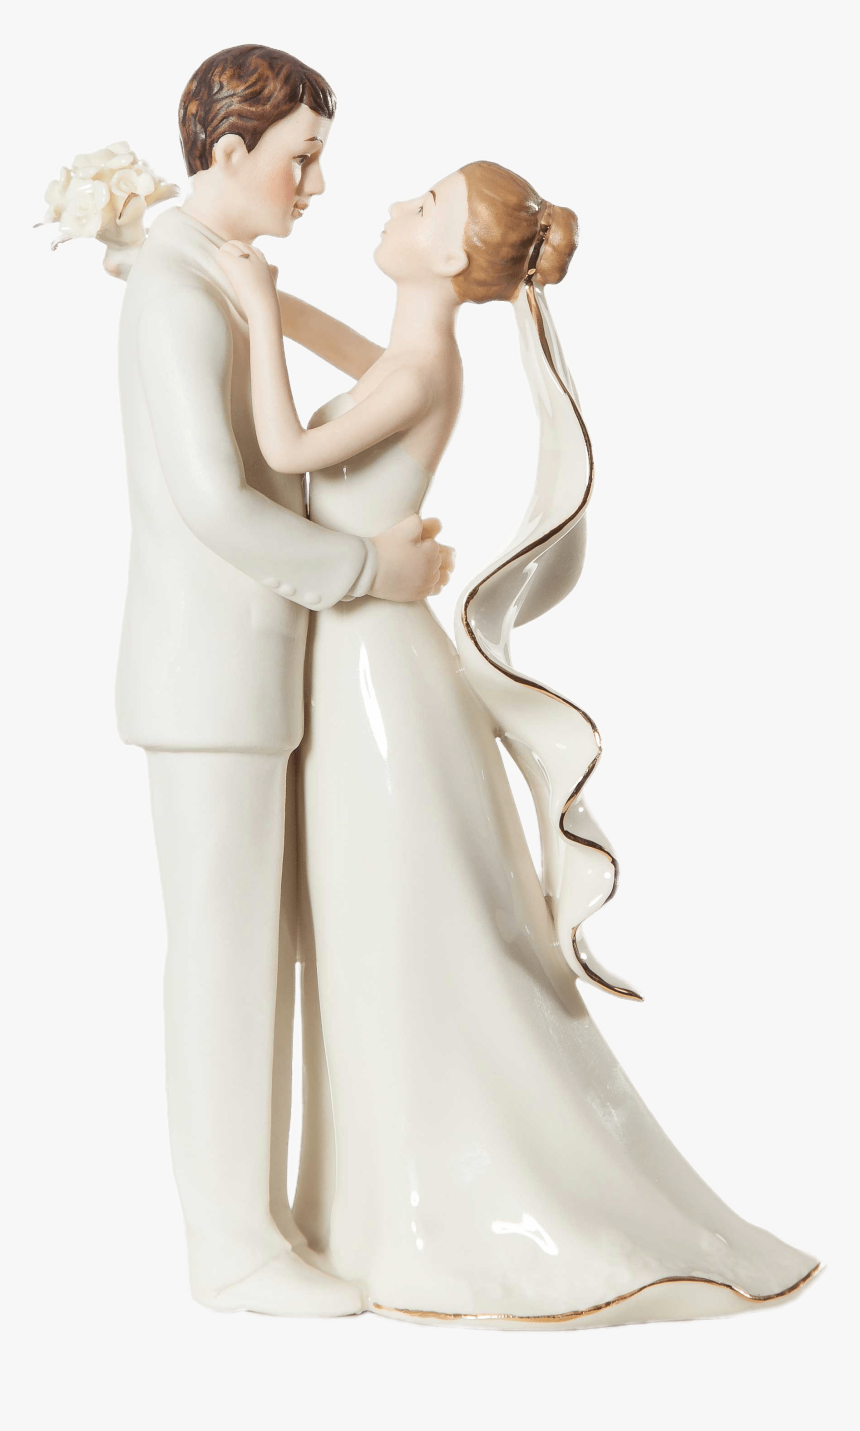 Porcelain Wedding Figurines - Wedding Figures Png Transparent, Png Download, Free Download